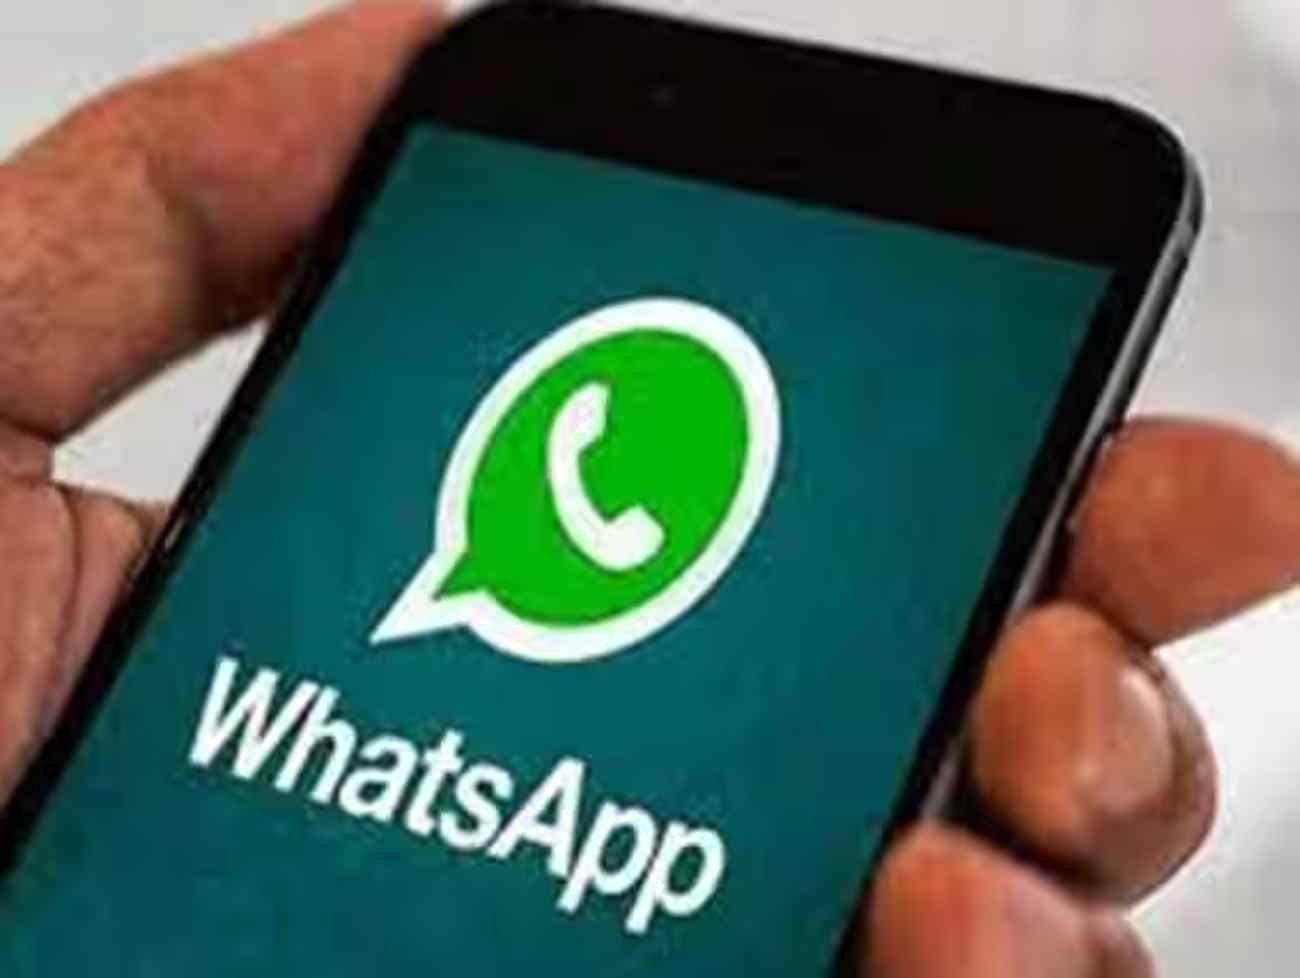 WhatsAppની ભારતીય એકાઉન્ટ્સ પર મોટી કાર્યવાહી, 66 લાખથી વધુ એકાઉન્ટ પર મુક્યો પ્રતિબંધ